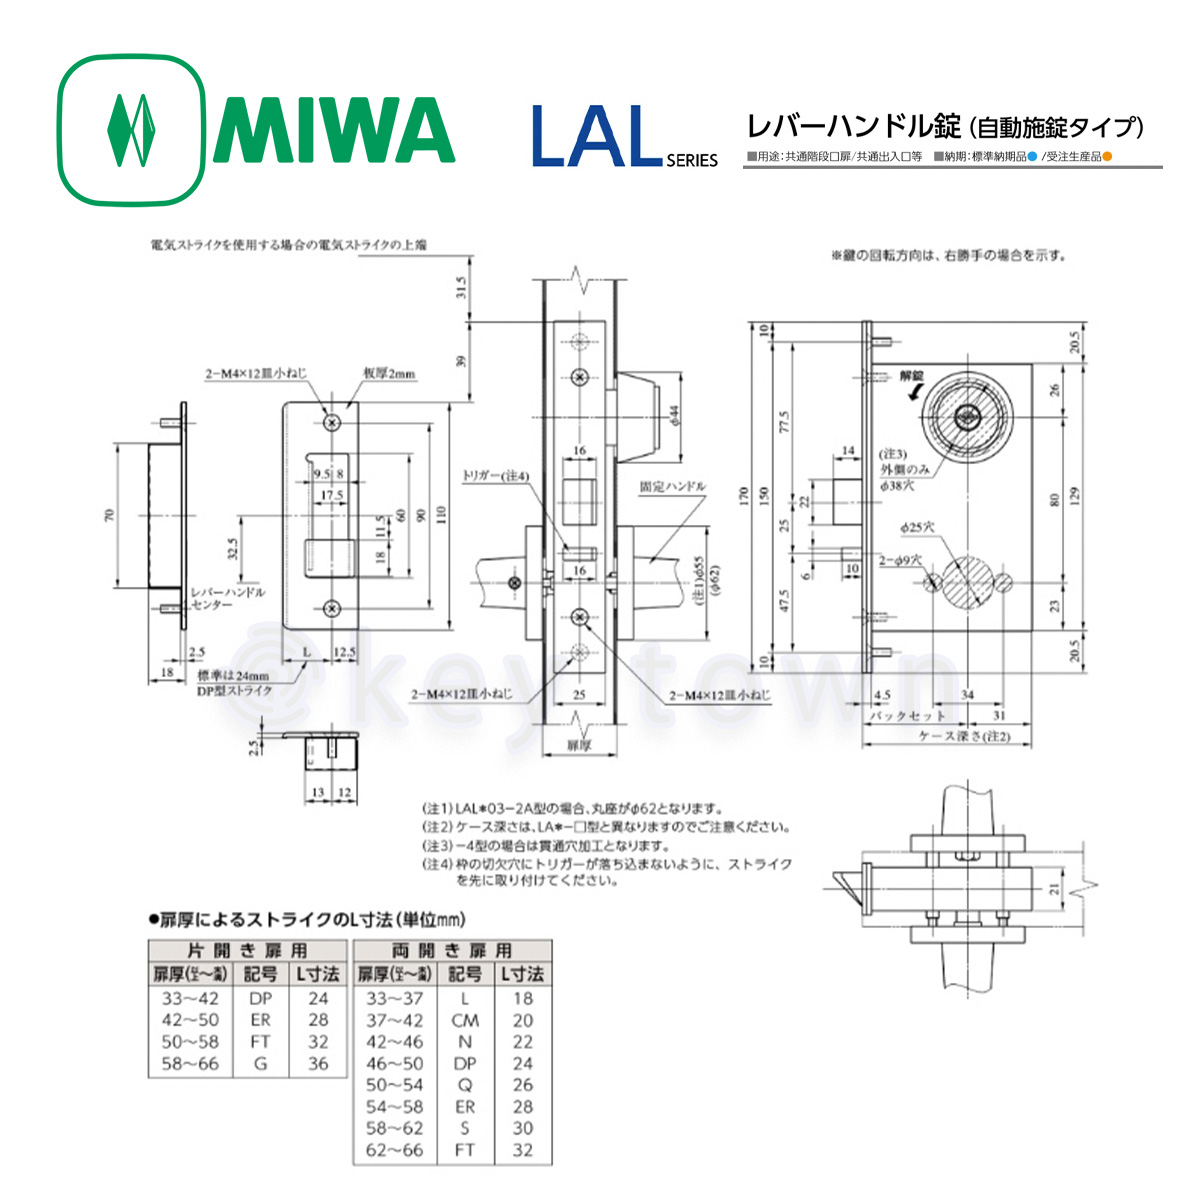 MIWA 【美和ロック】 レバーハンドル [MIWA-LAL] U9LAL51-2A型[MIWALAL]｜鍵・シリンダーの格安ネット通販【鍵TOWN】